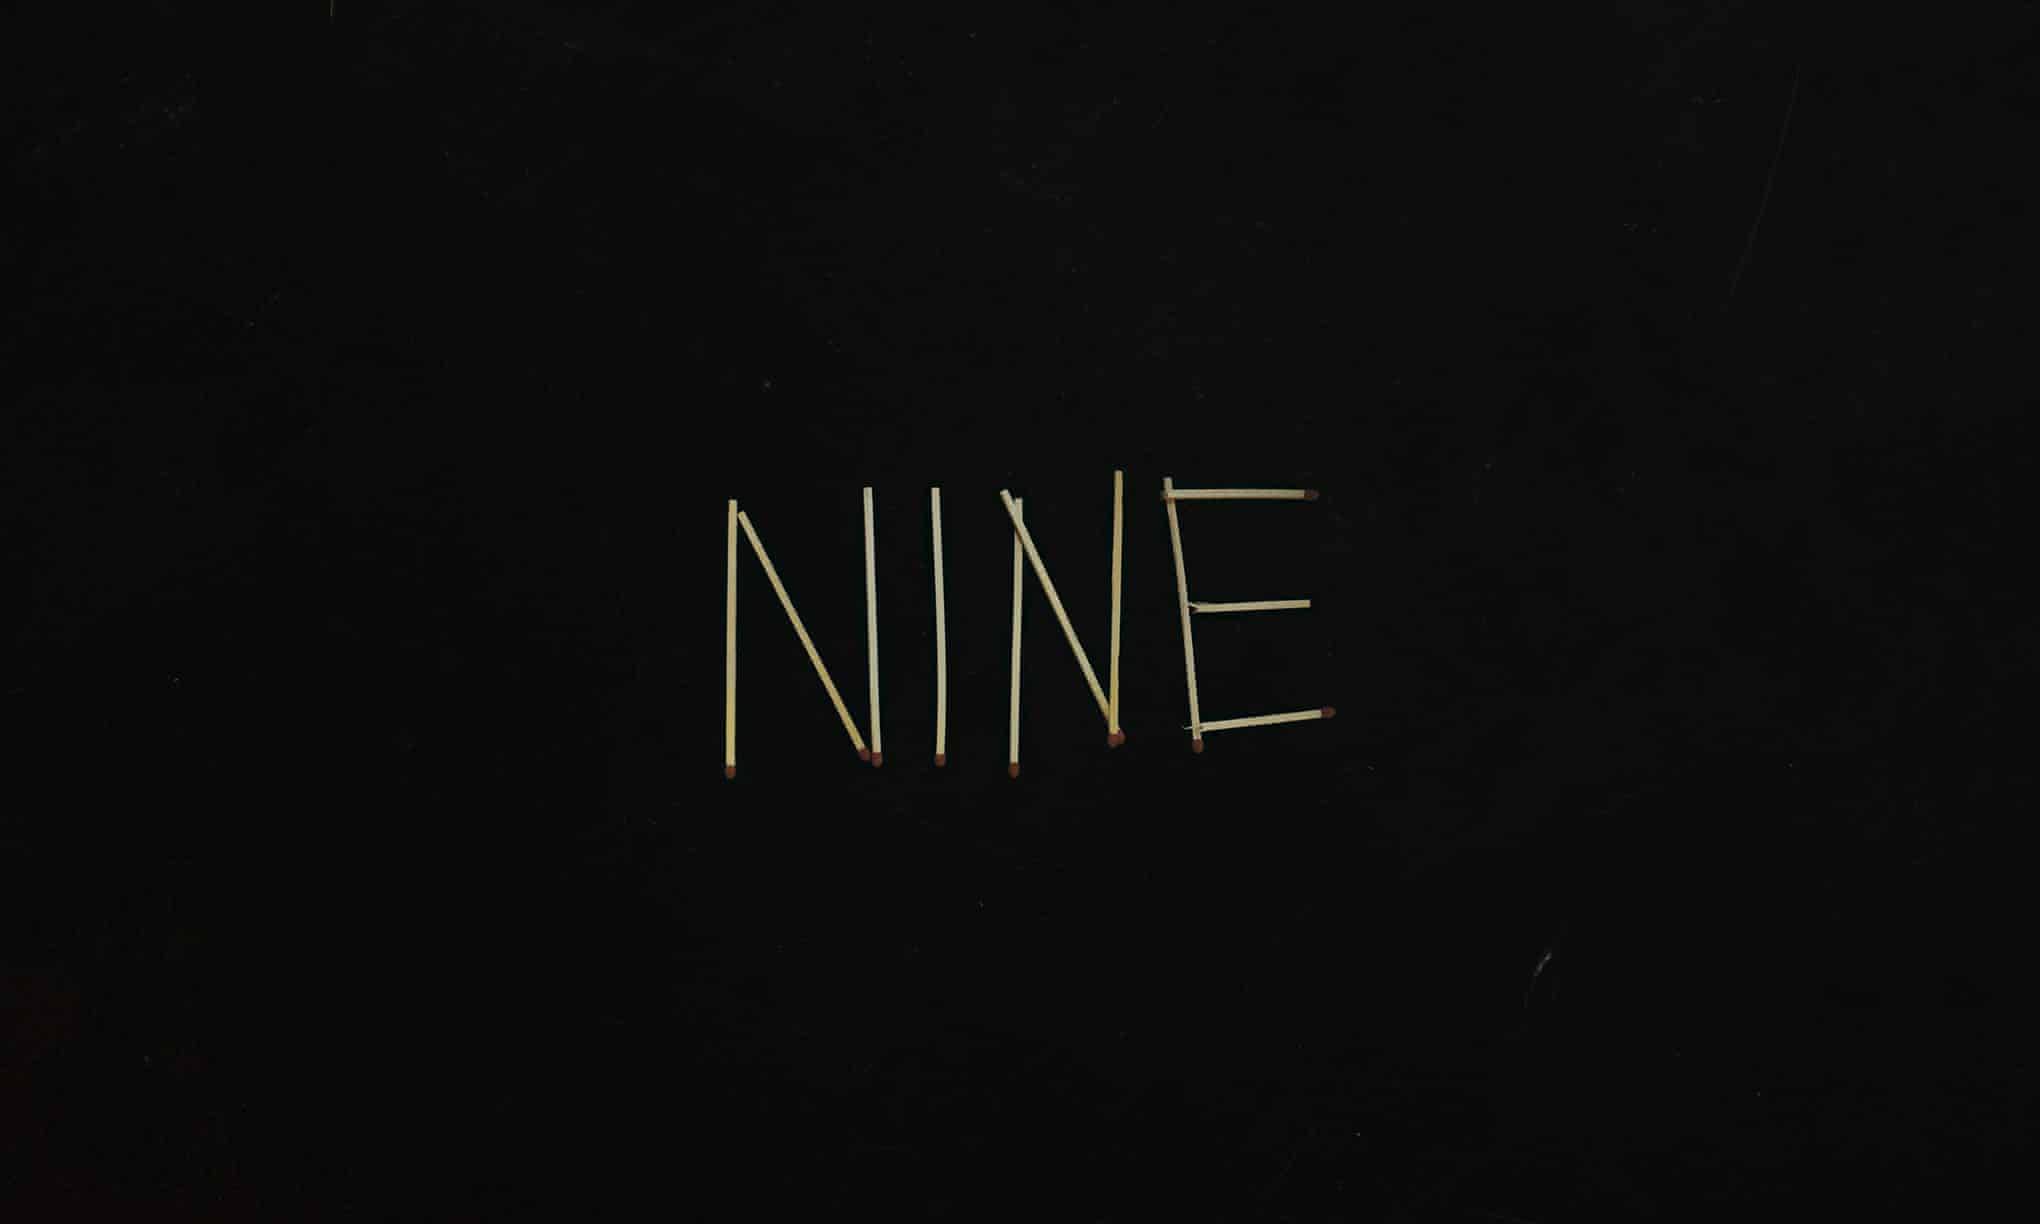 L'album “Nine” de Sault, sorti en juin 2021 sur le label Forever Living Originals et supprimé des plateformes quatre-vingt-dix-neuf jours après.